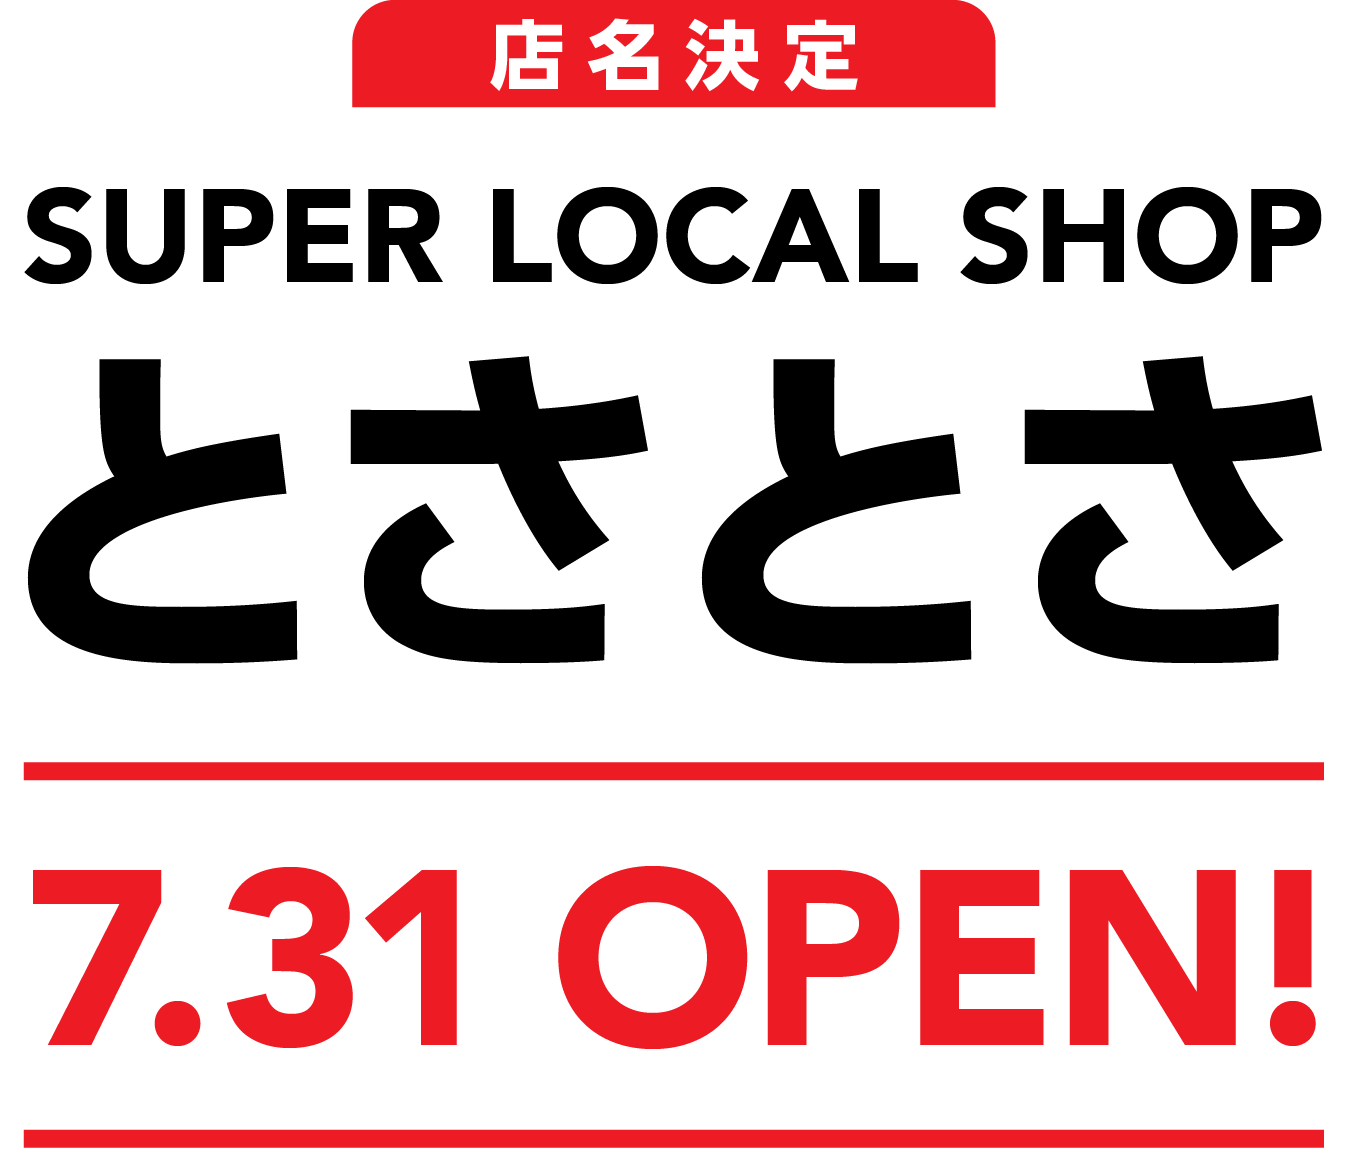 SUPER LOCAL SHOP とさとさ 7.31 OPEN!